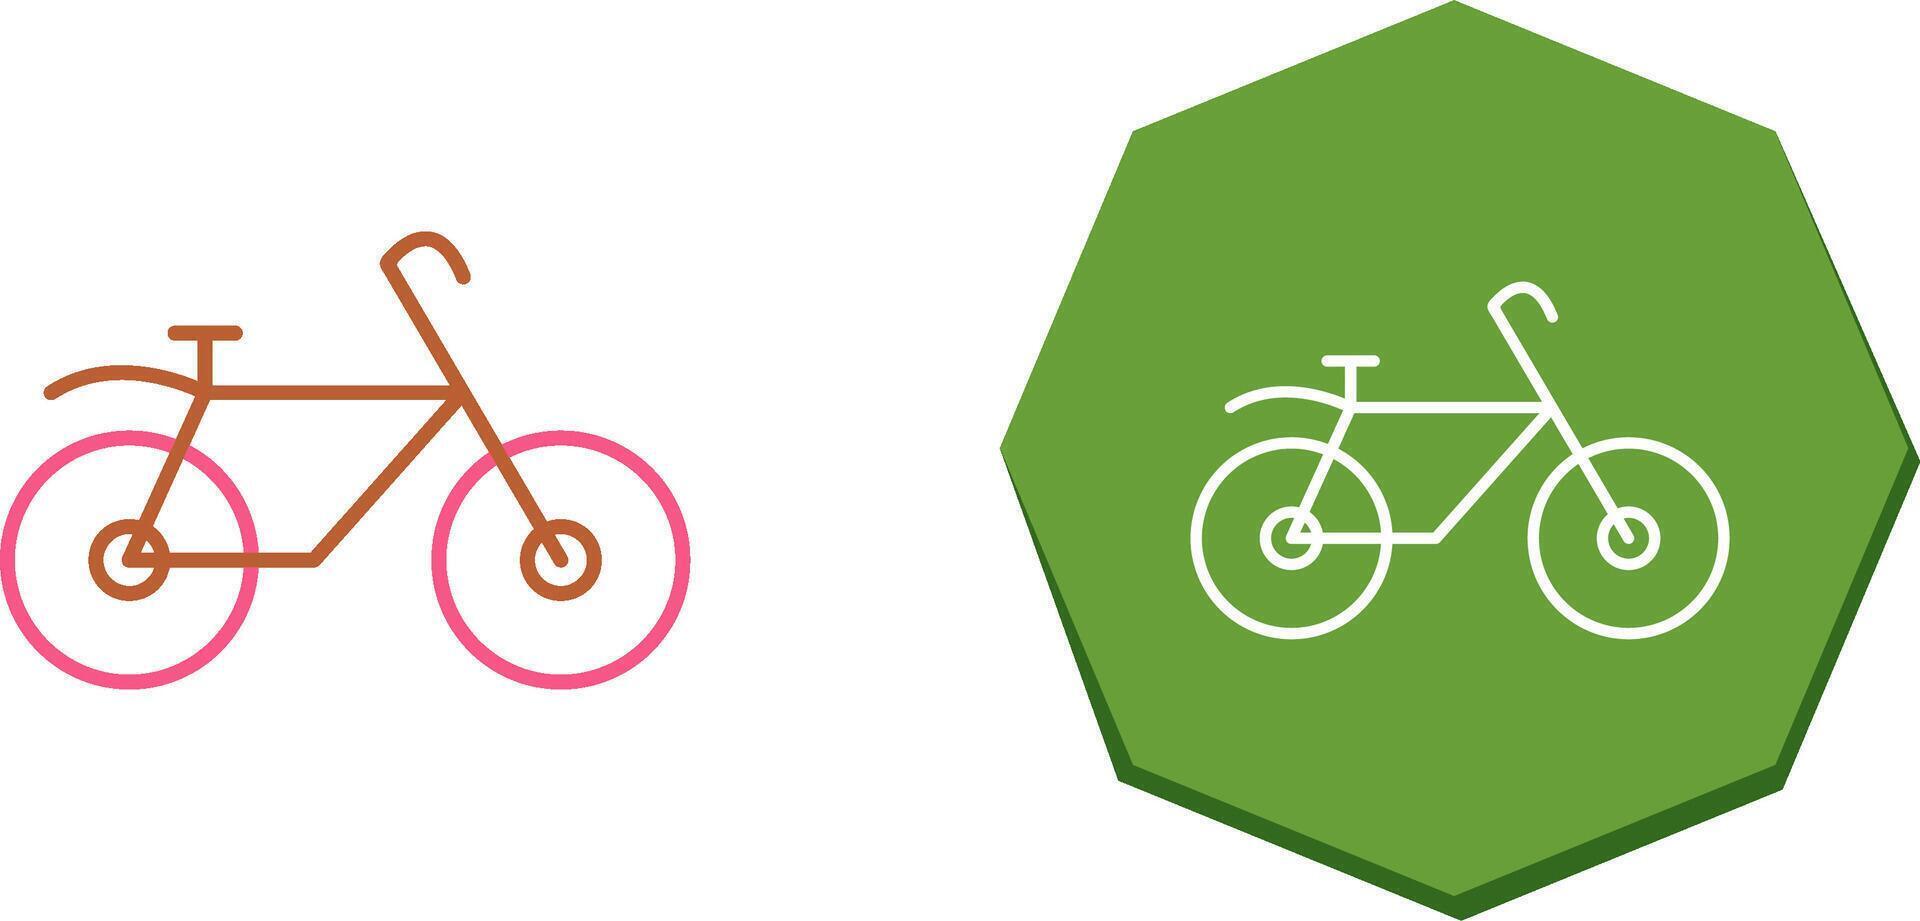 fiets pictogram ontwerp vector